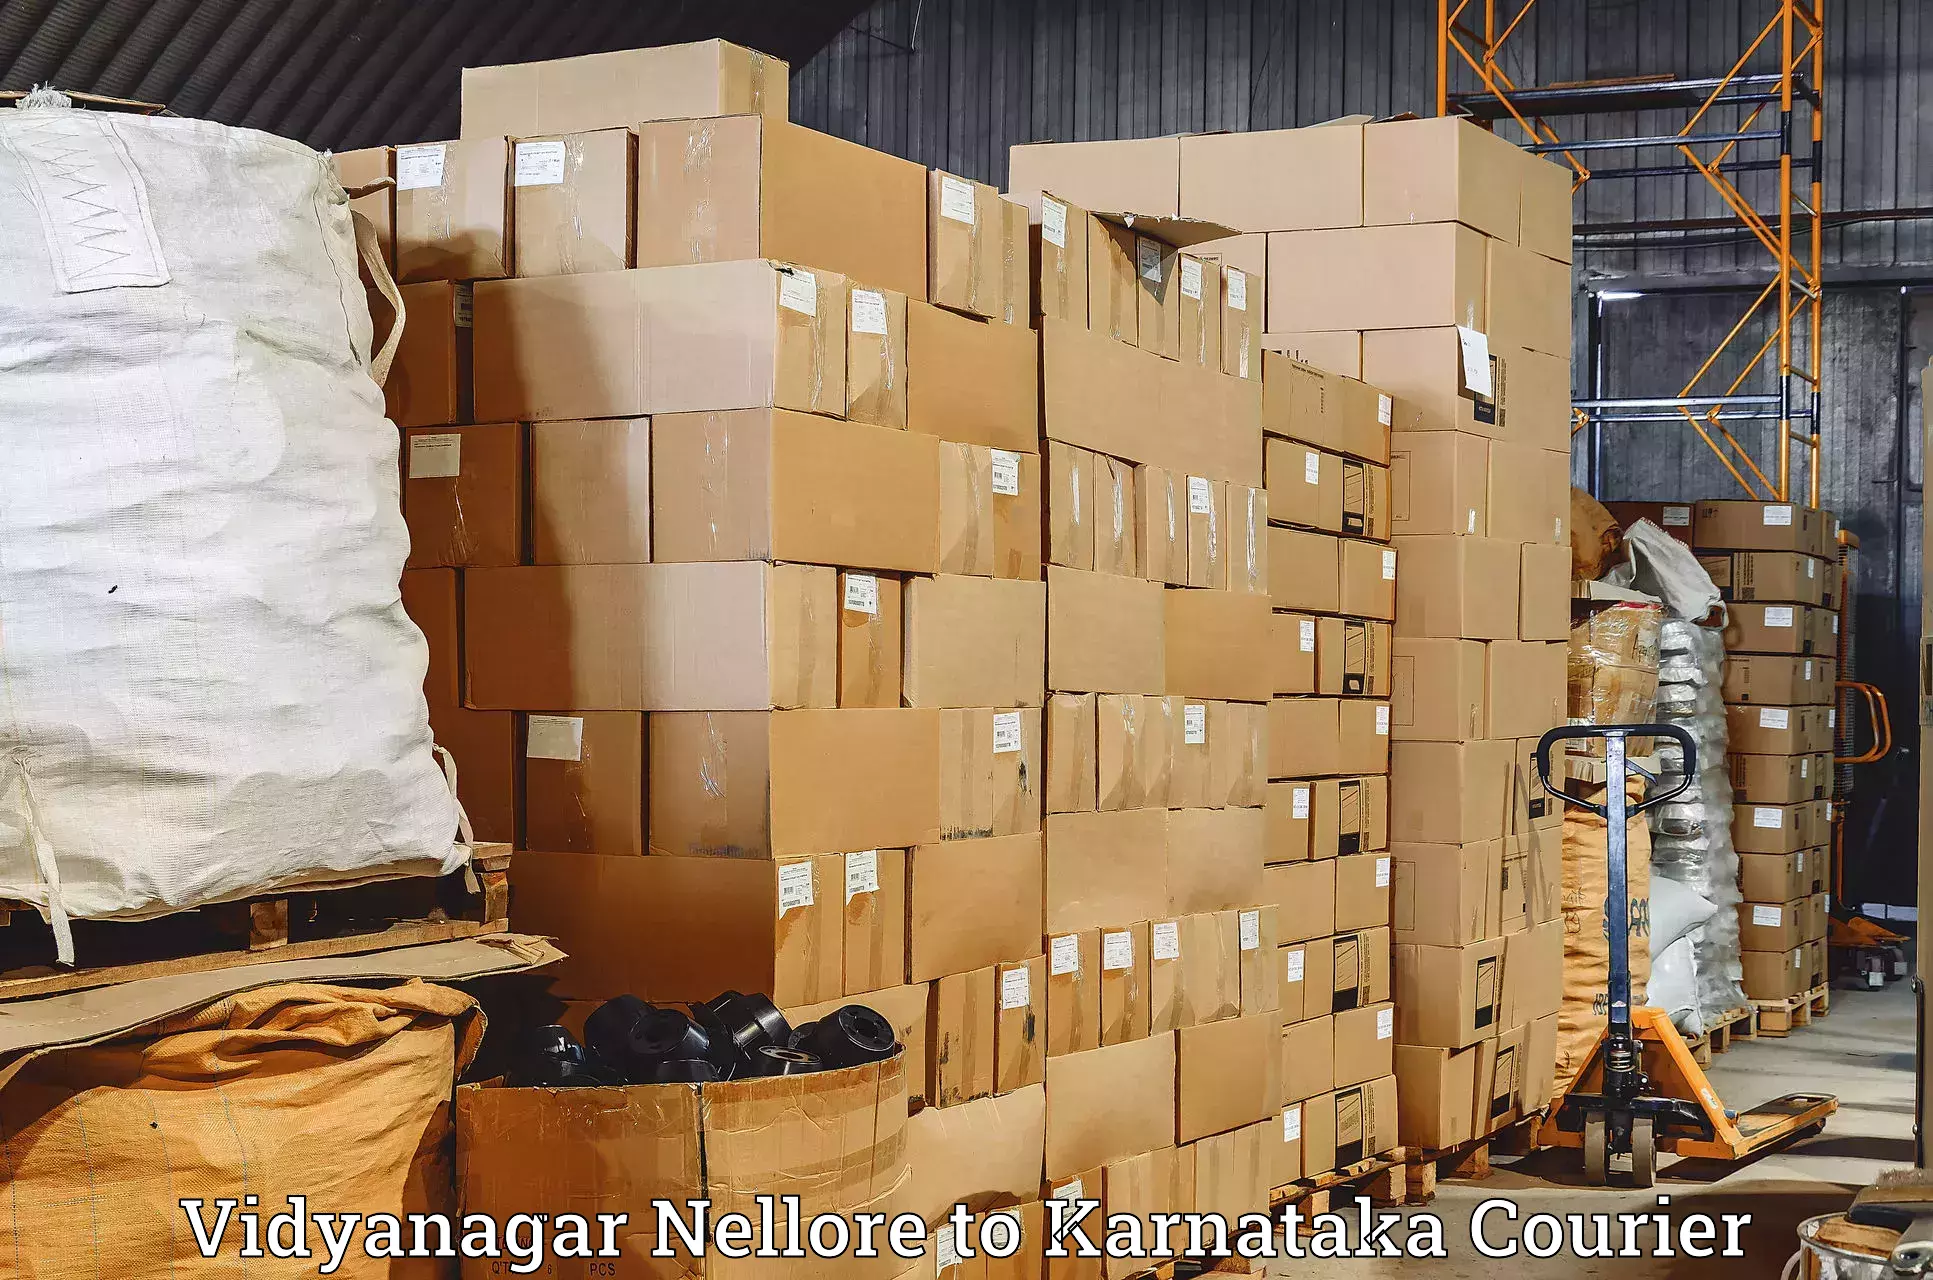 Speedy delivery service Vidyanagar Nellore to Chikkamagalur